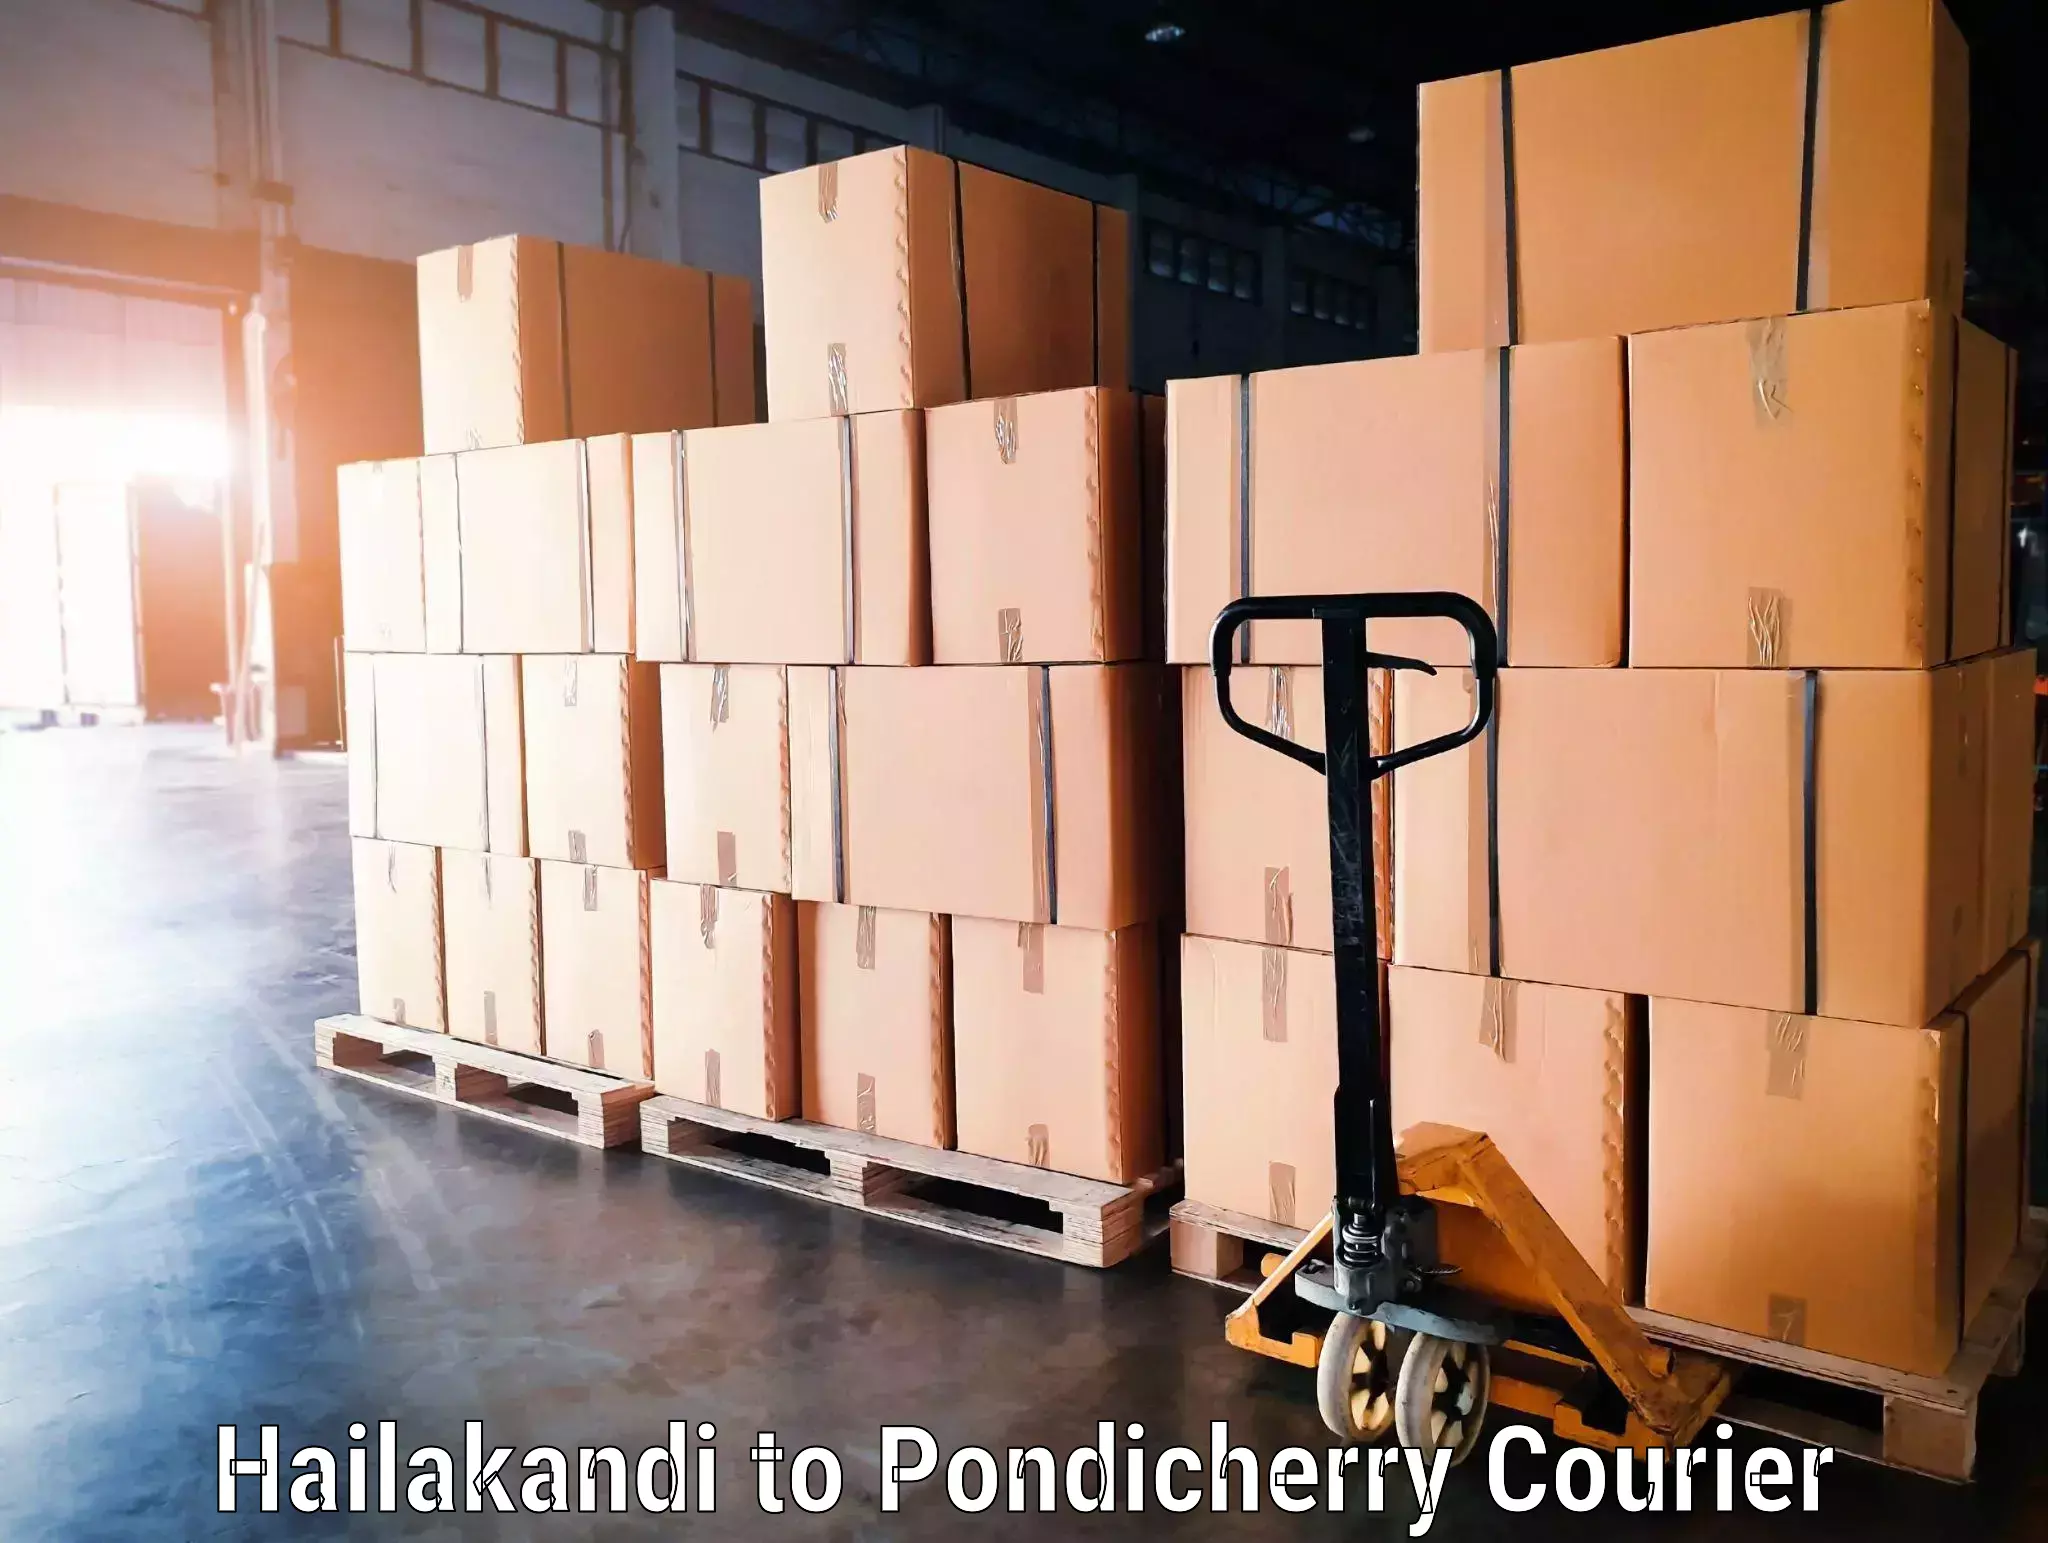 Luggage shipment specialists Hailakandi to Metttupalayam